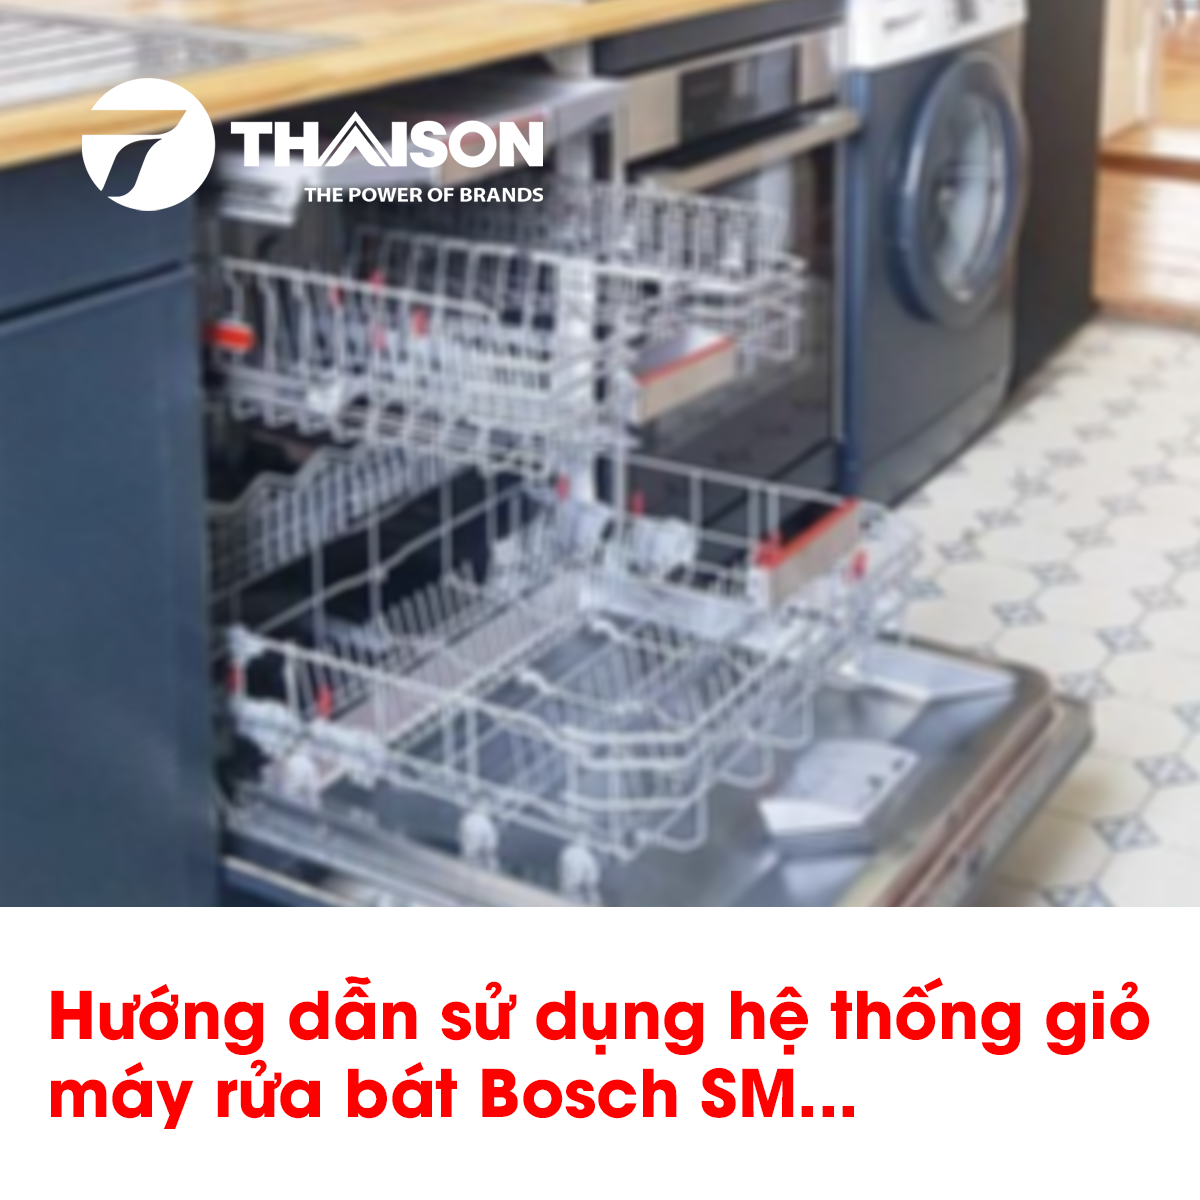 Hướng dẫn sử dụng hệ thống giỏ máy rửa bát Bosch SM...